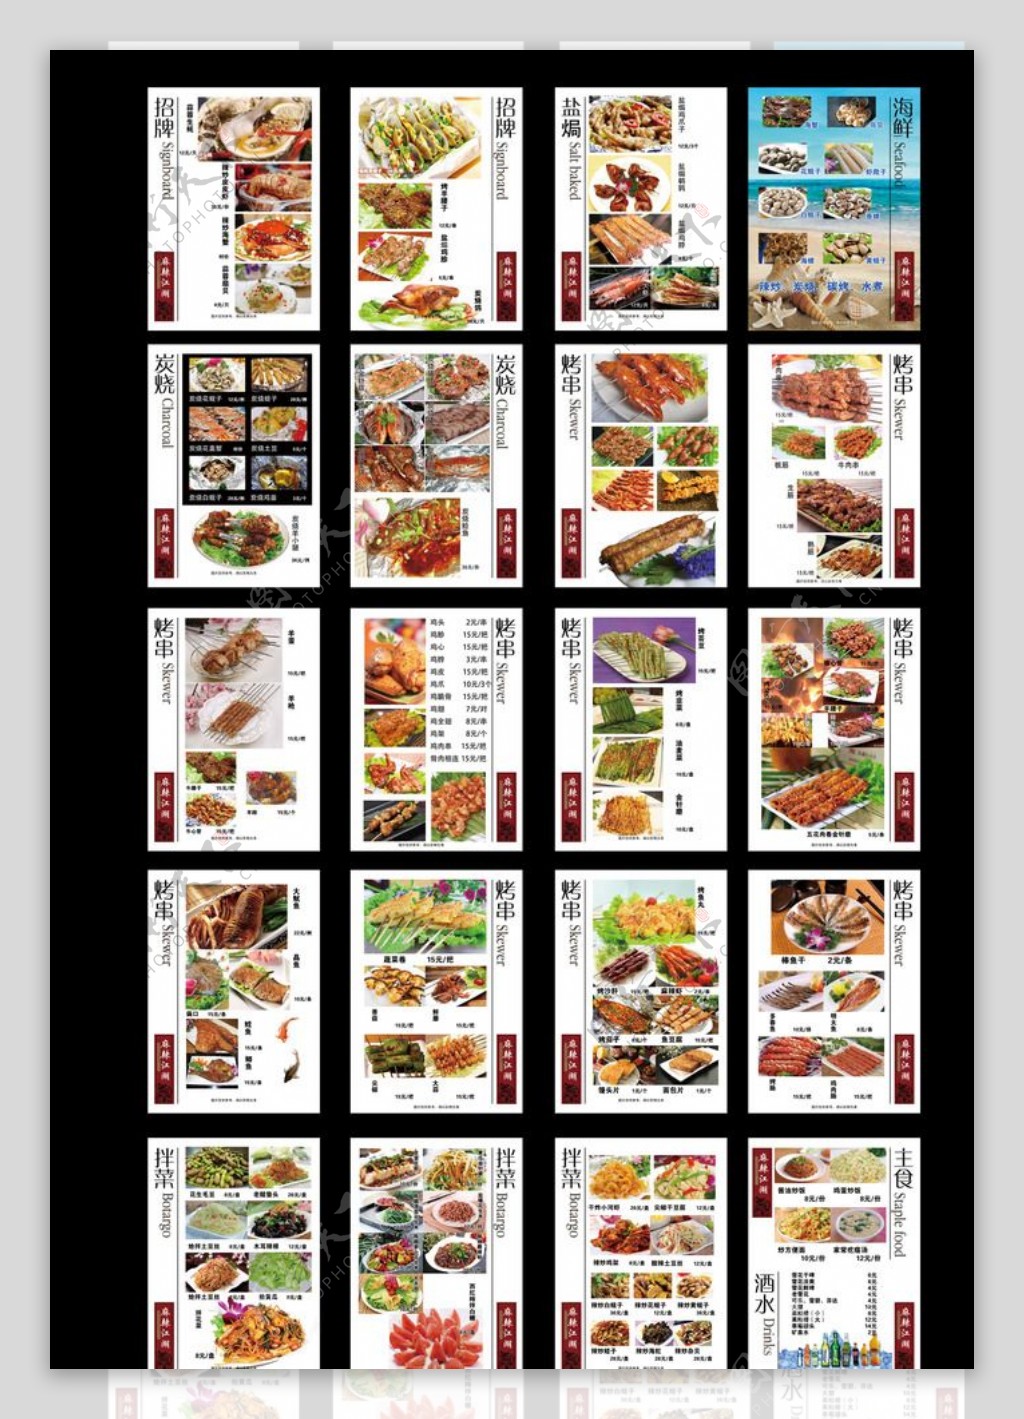 烧烤店菜单图片